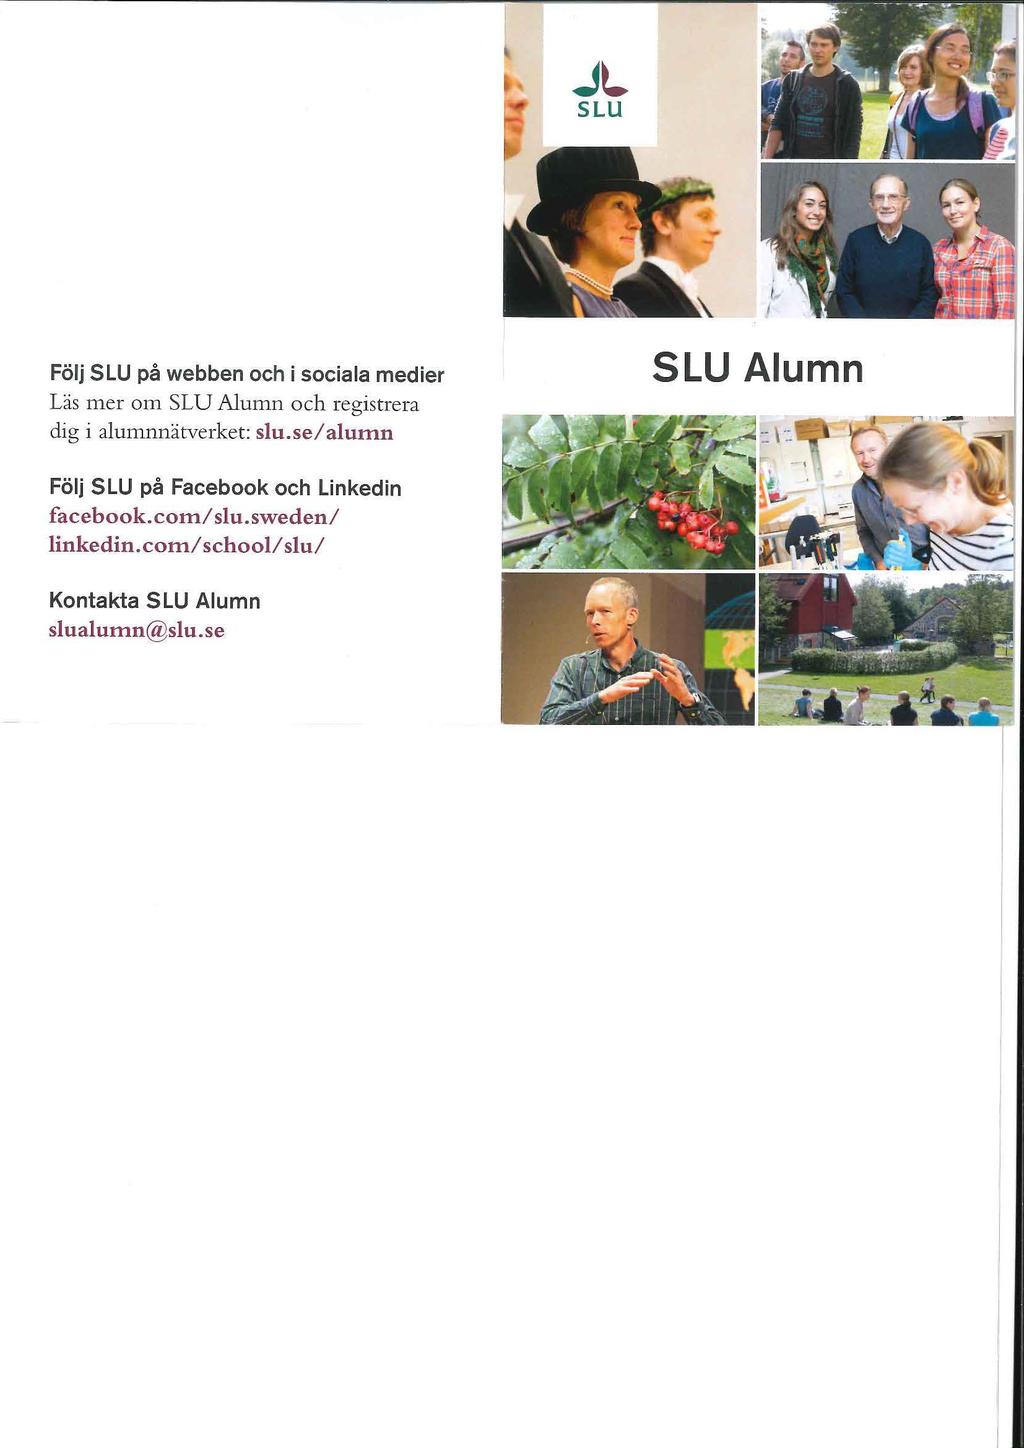 JL SLU Folj SLU pa webben och i sociala medier Las mer om SLU Alumn och registrera dig i alumnnatverket: slu.